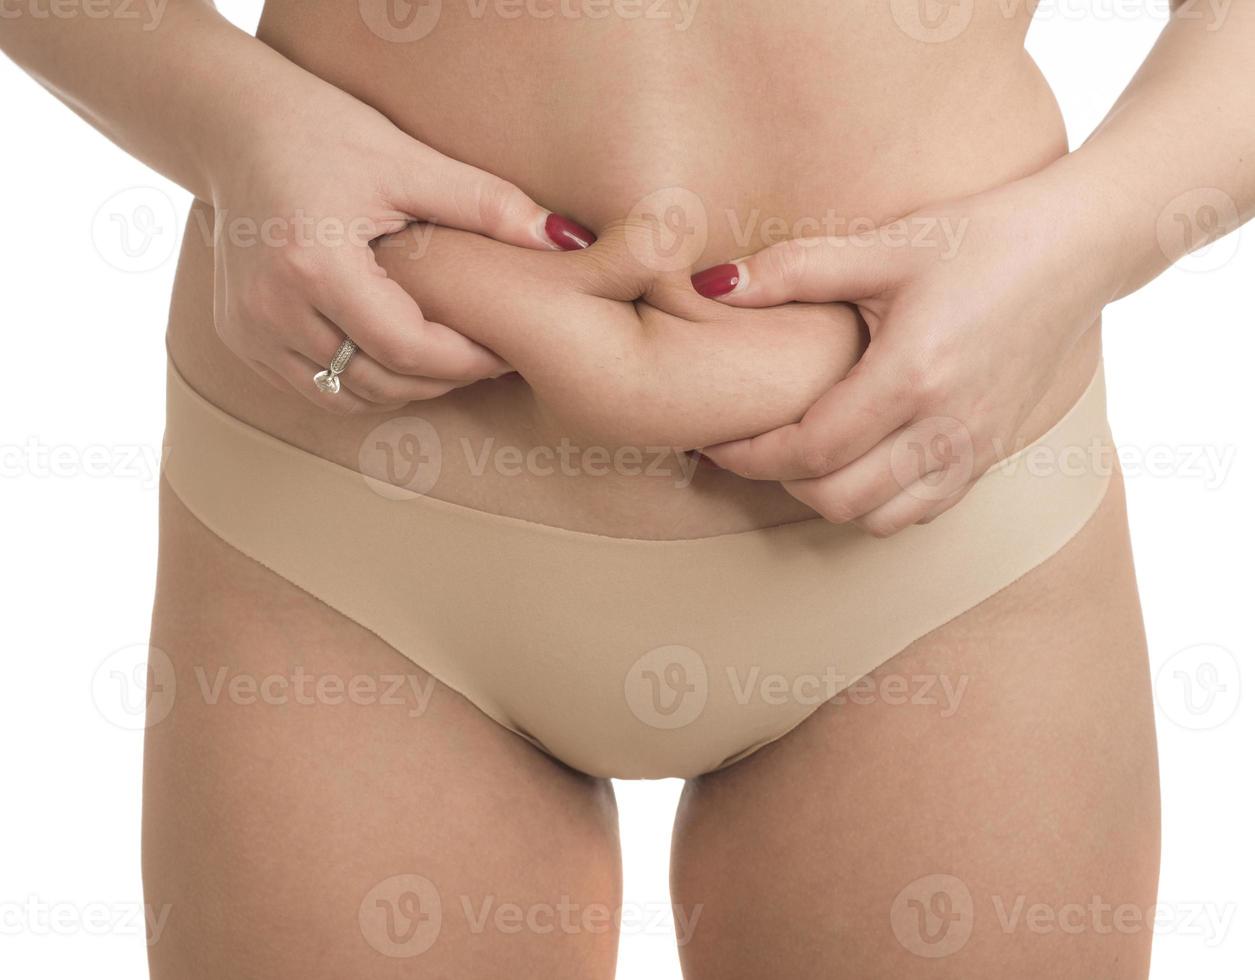 mulher com sobrepeso com coxas gordas, obesidade feminina foto